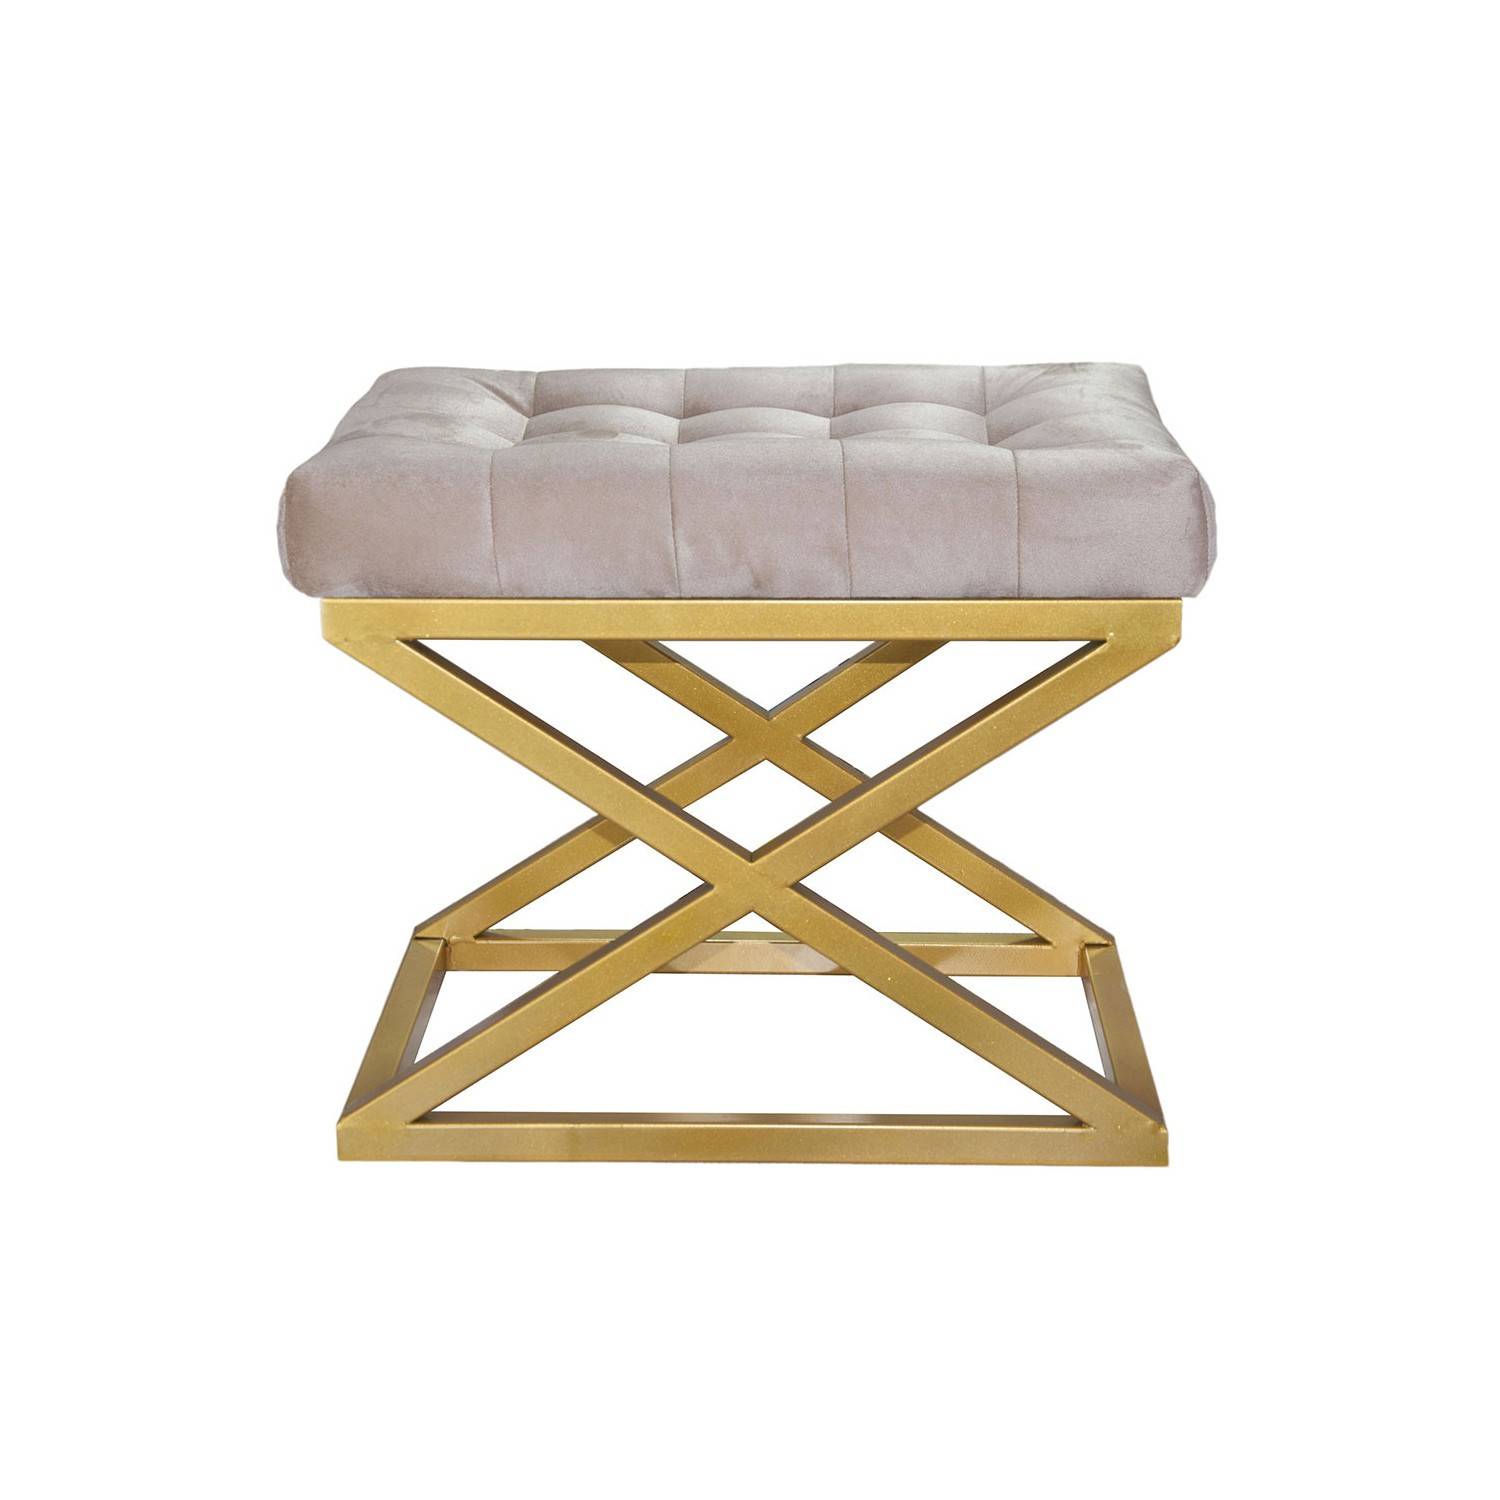 Taburete Ulad, asiento tapizado en metal dorado y terciopelo blanco crema